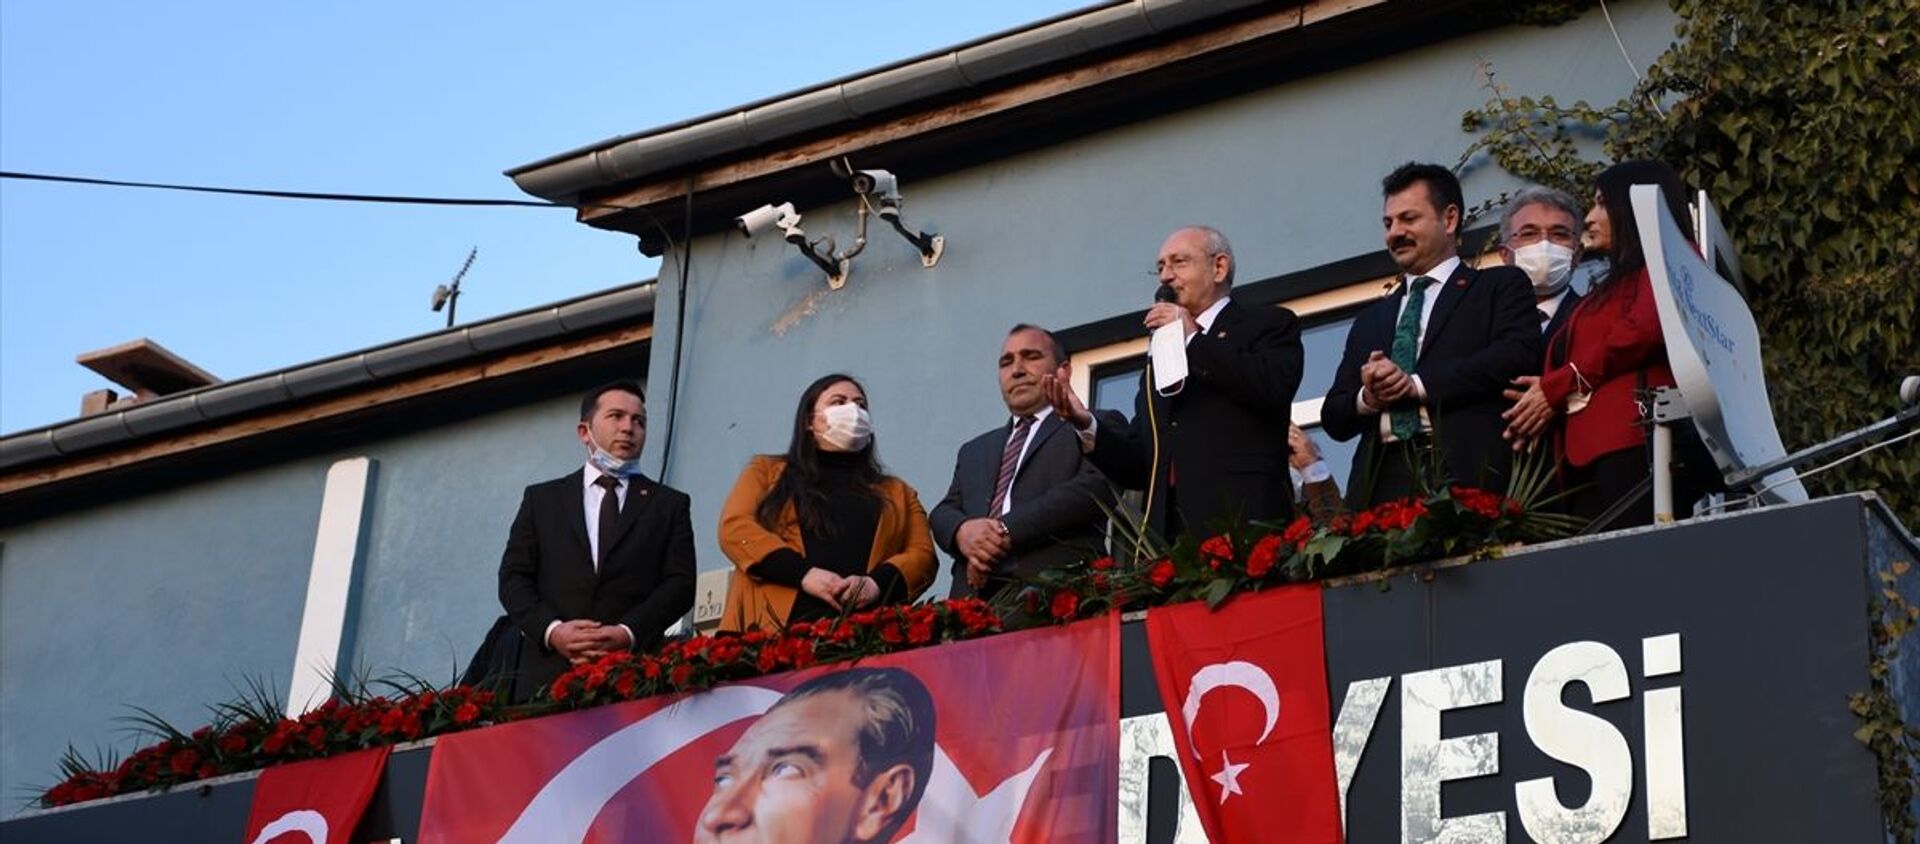 CHP Genel Başkanı Kemal Kılıçdaroğlu, Aksaray programları kapsamında Saratlı Beldesini ziyaret etti. - Sputnik Türkiye, 1920, 26.02.2021